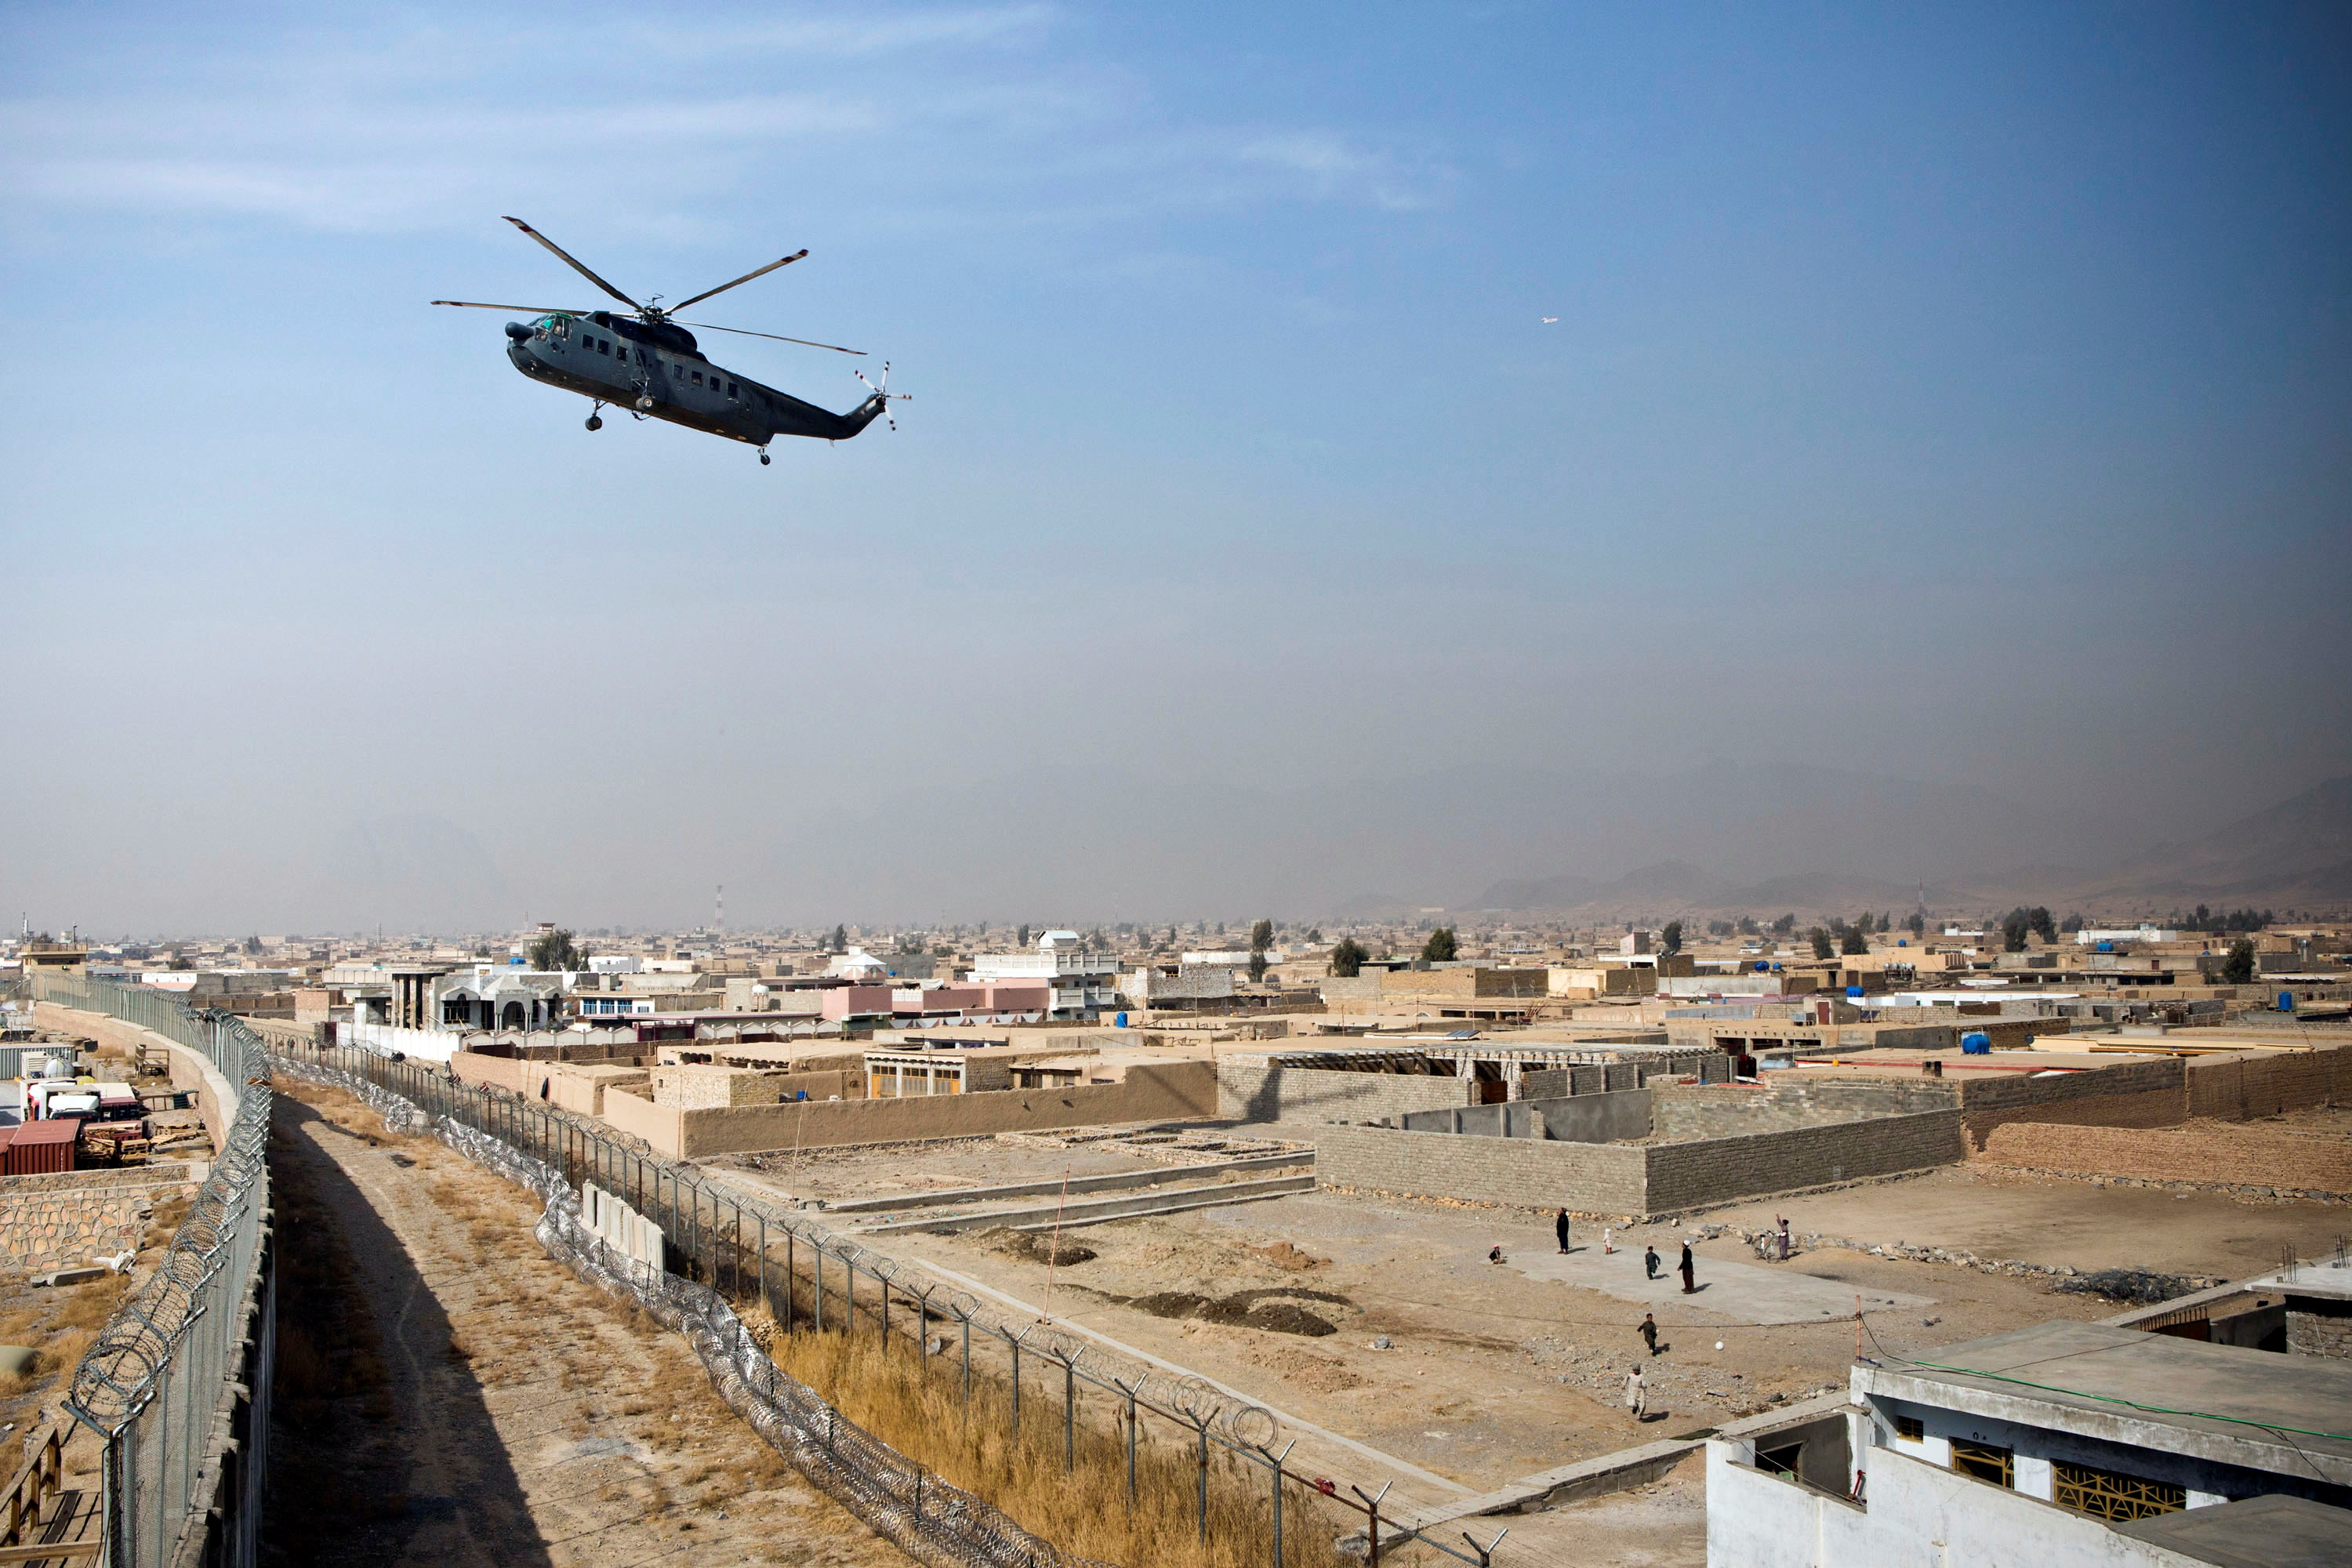 Les talibans entrent dans Kaboul pour reprendre le pouvoir, les diplomates quittent l'Afghanistan